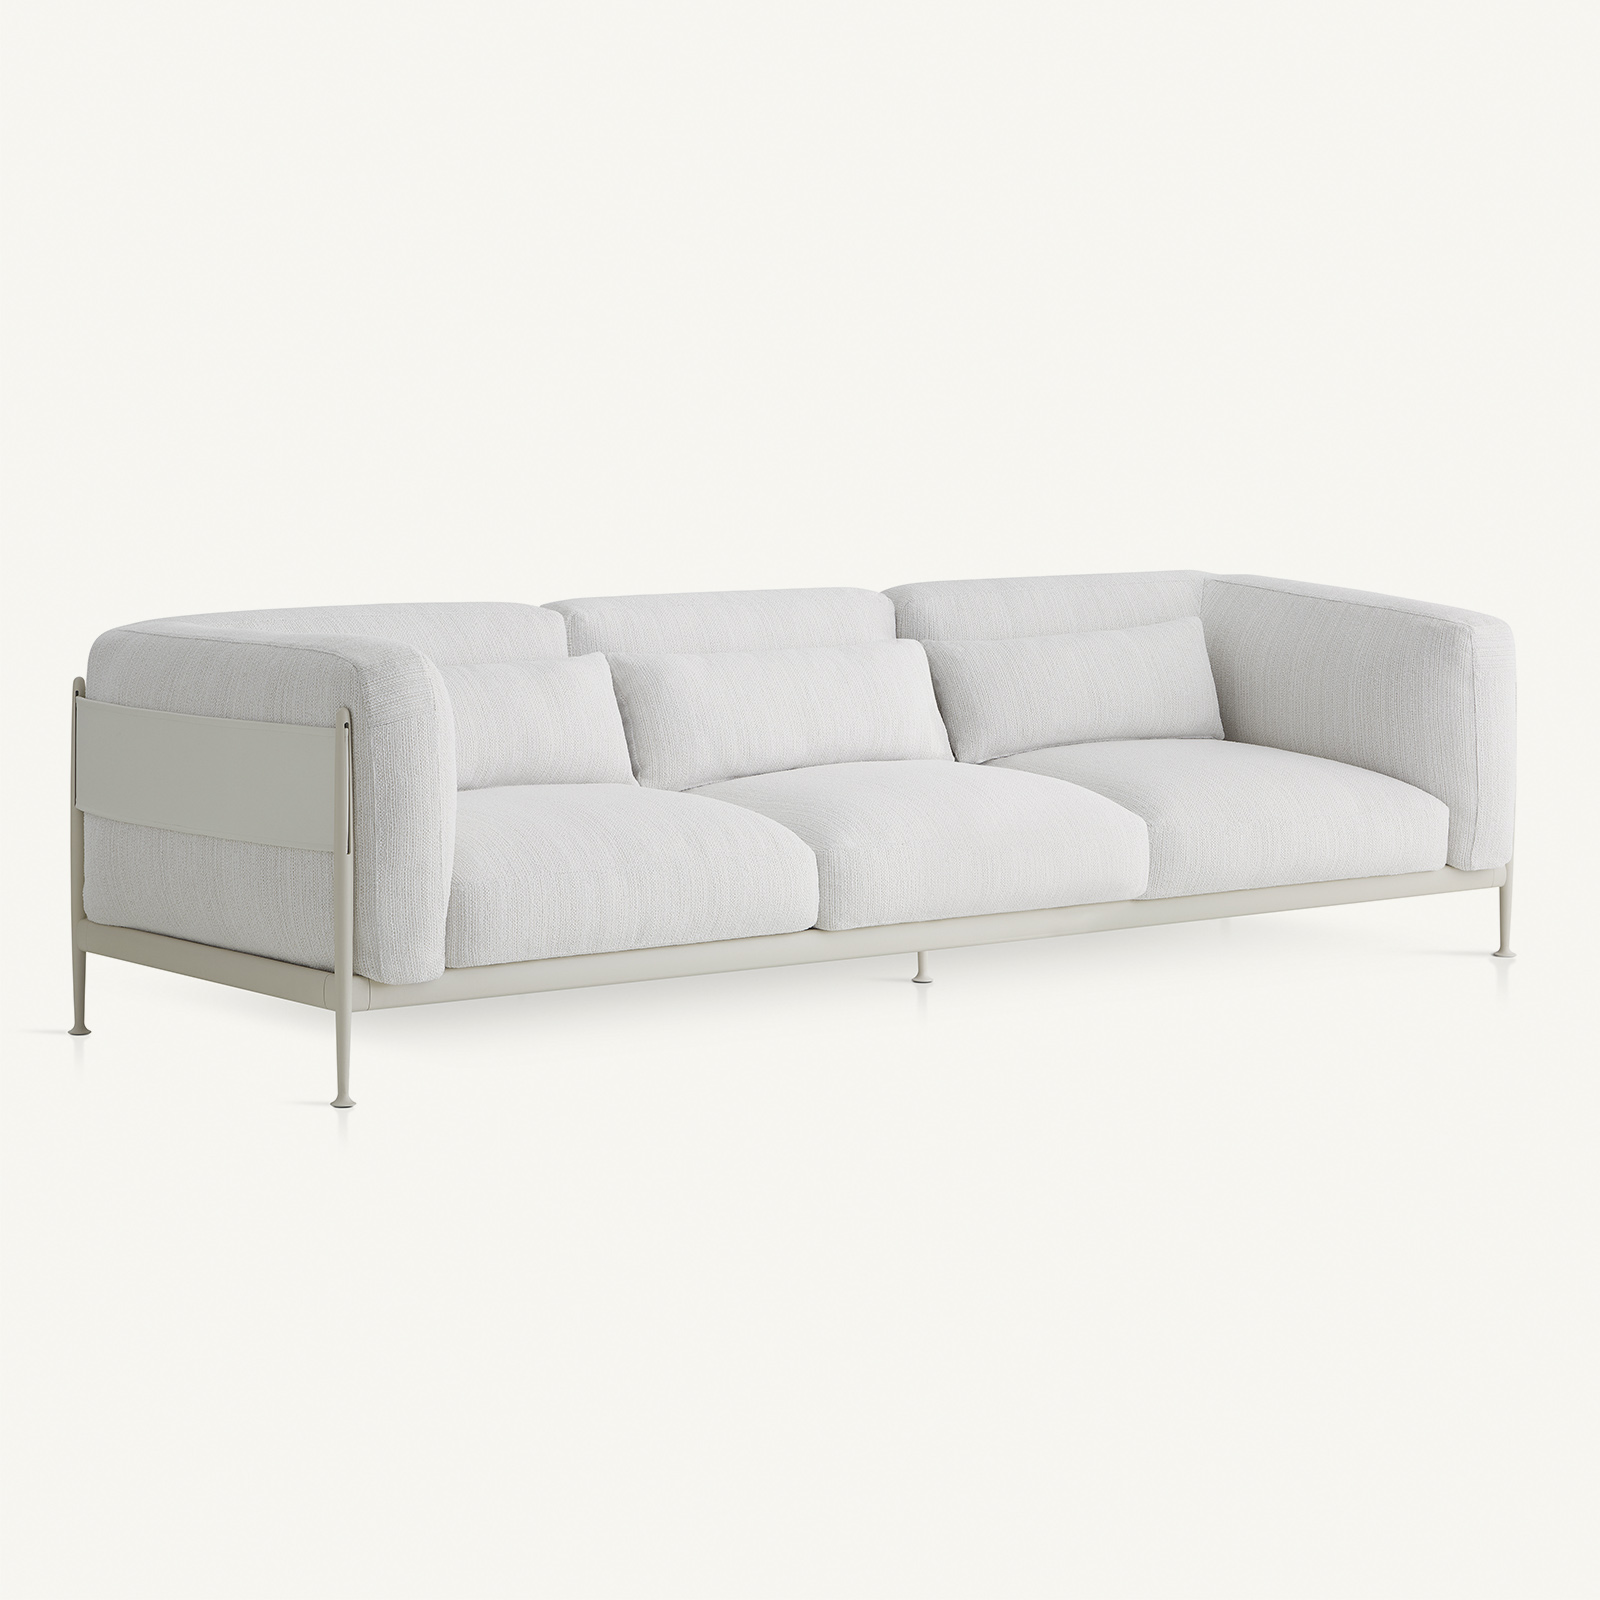 outdoor kollektion - sofas - xl-sofa obi